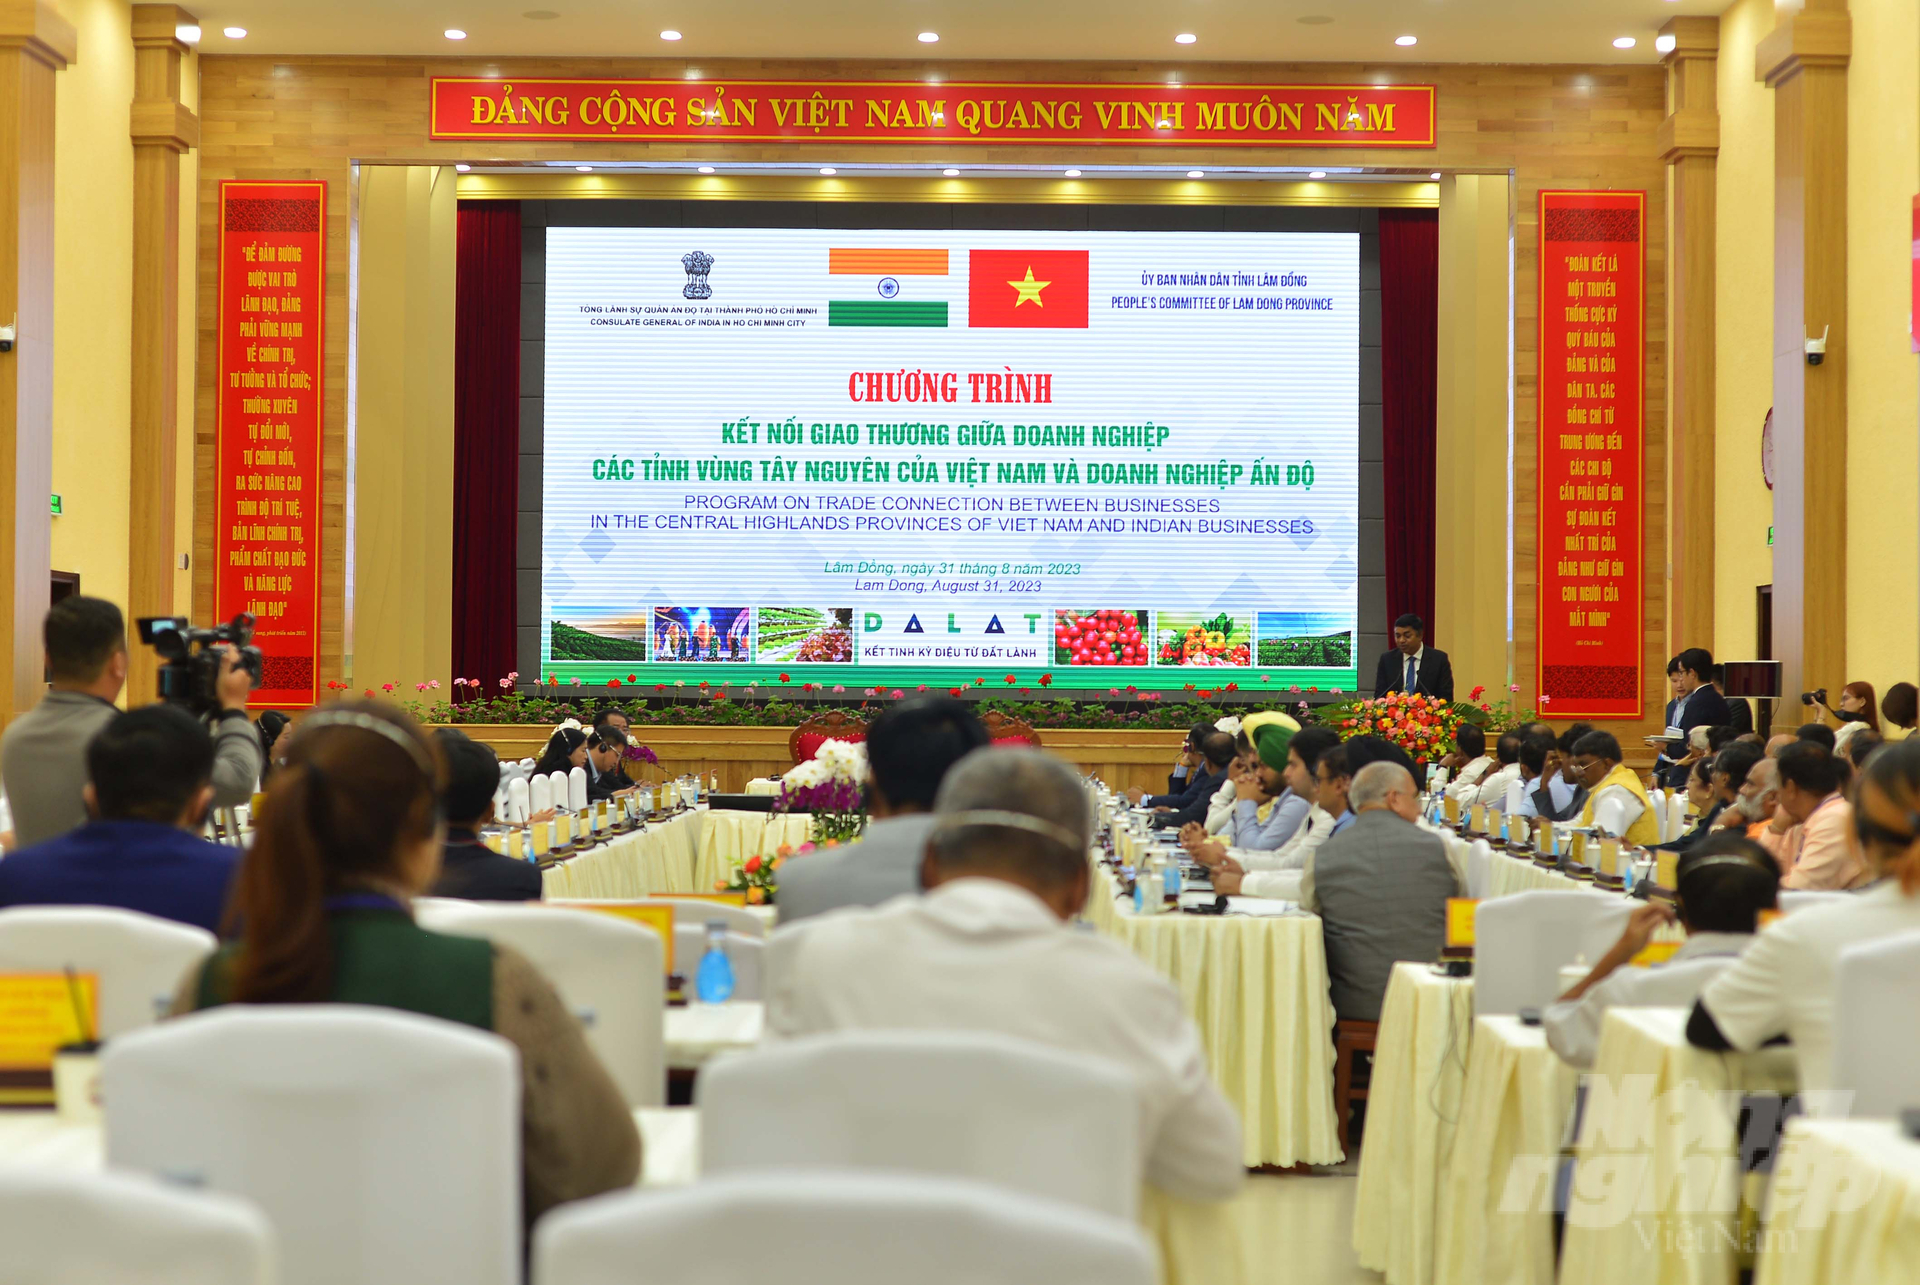 Chương trình kết nối giao thương giữa doanh nghiệp các tỉnh vùng Tây Nguyên với các doanh nghiệp Ấn Độ được tổ chức tại TP Đà Lạt, Lâm Đồng vào sáng 31/8. Ảnh: Minh Hậu.